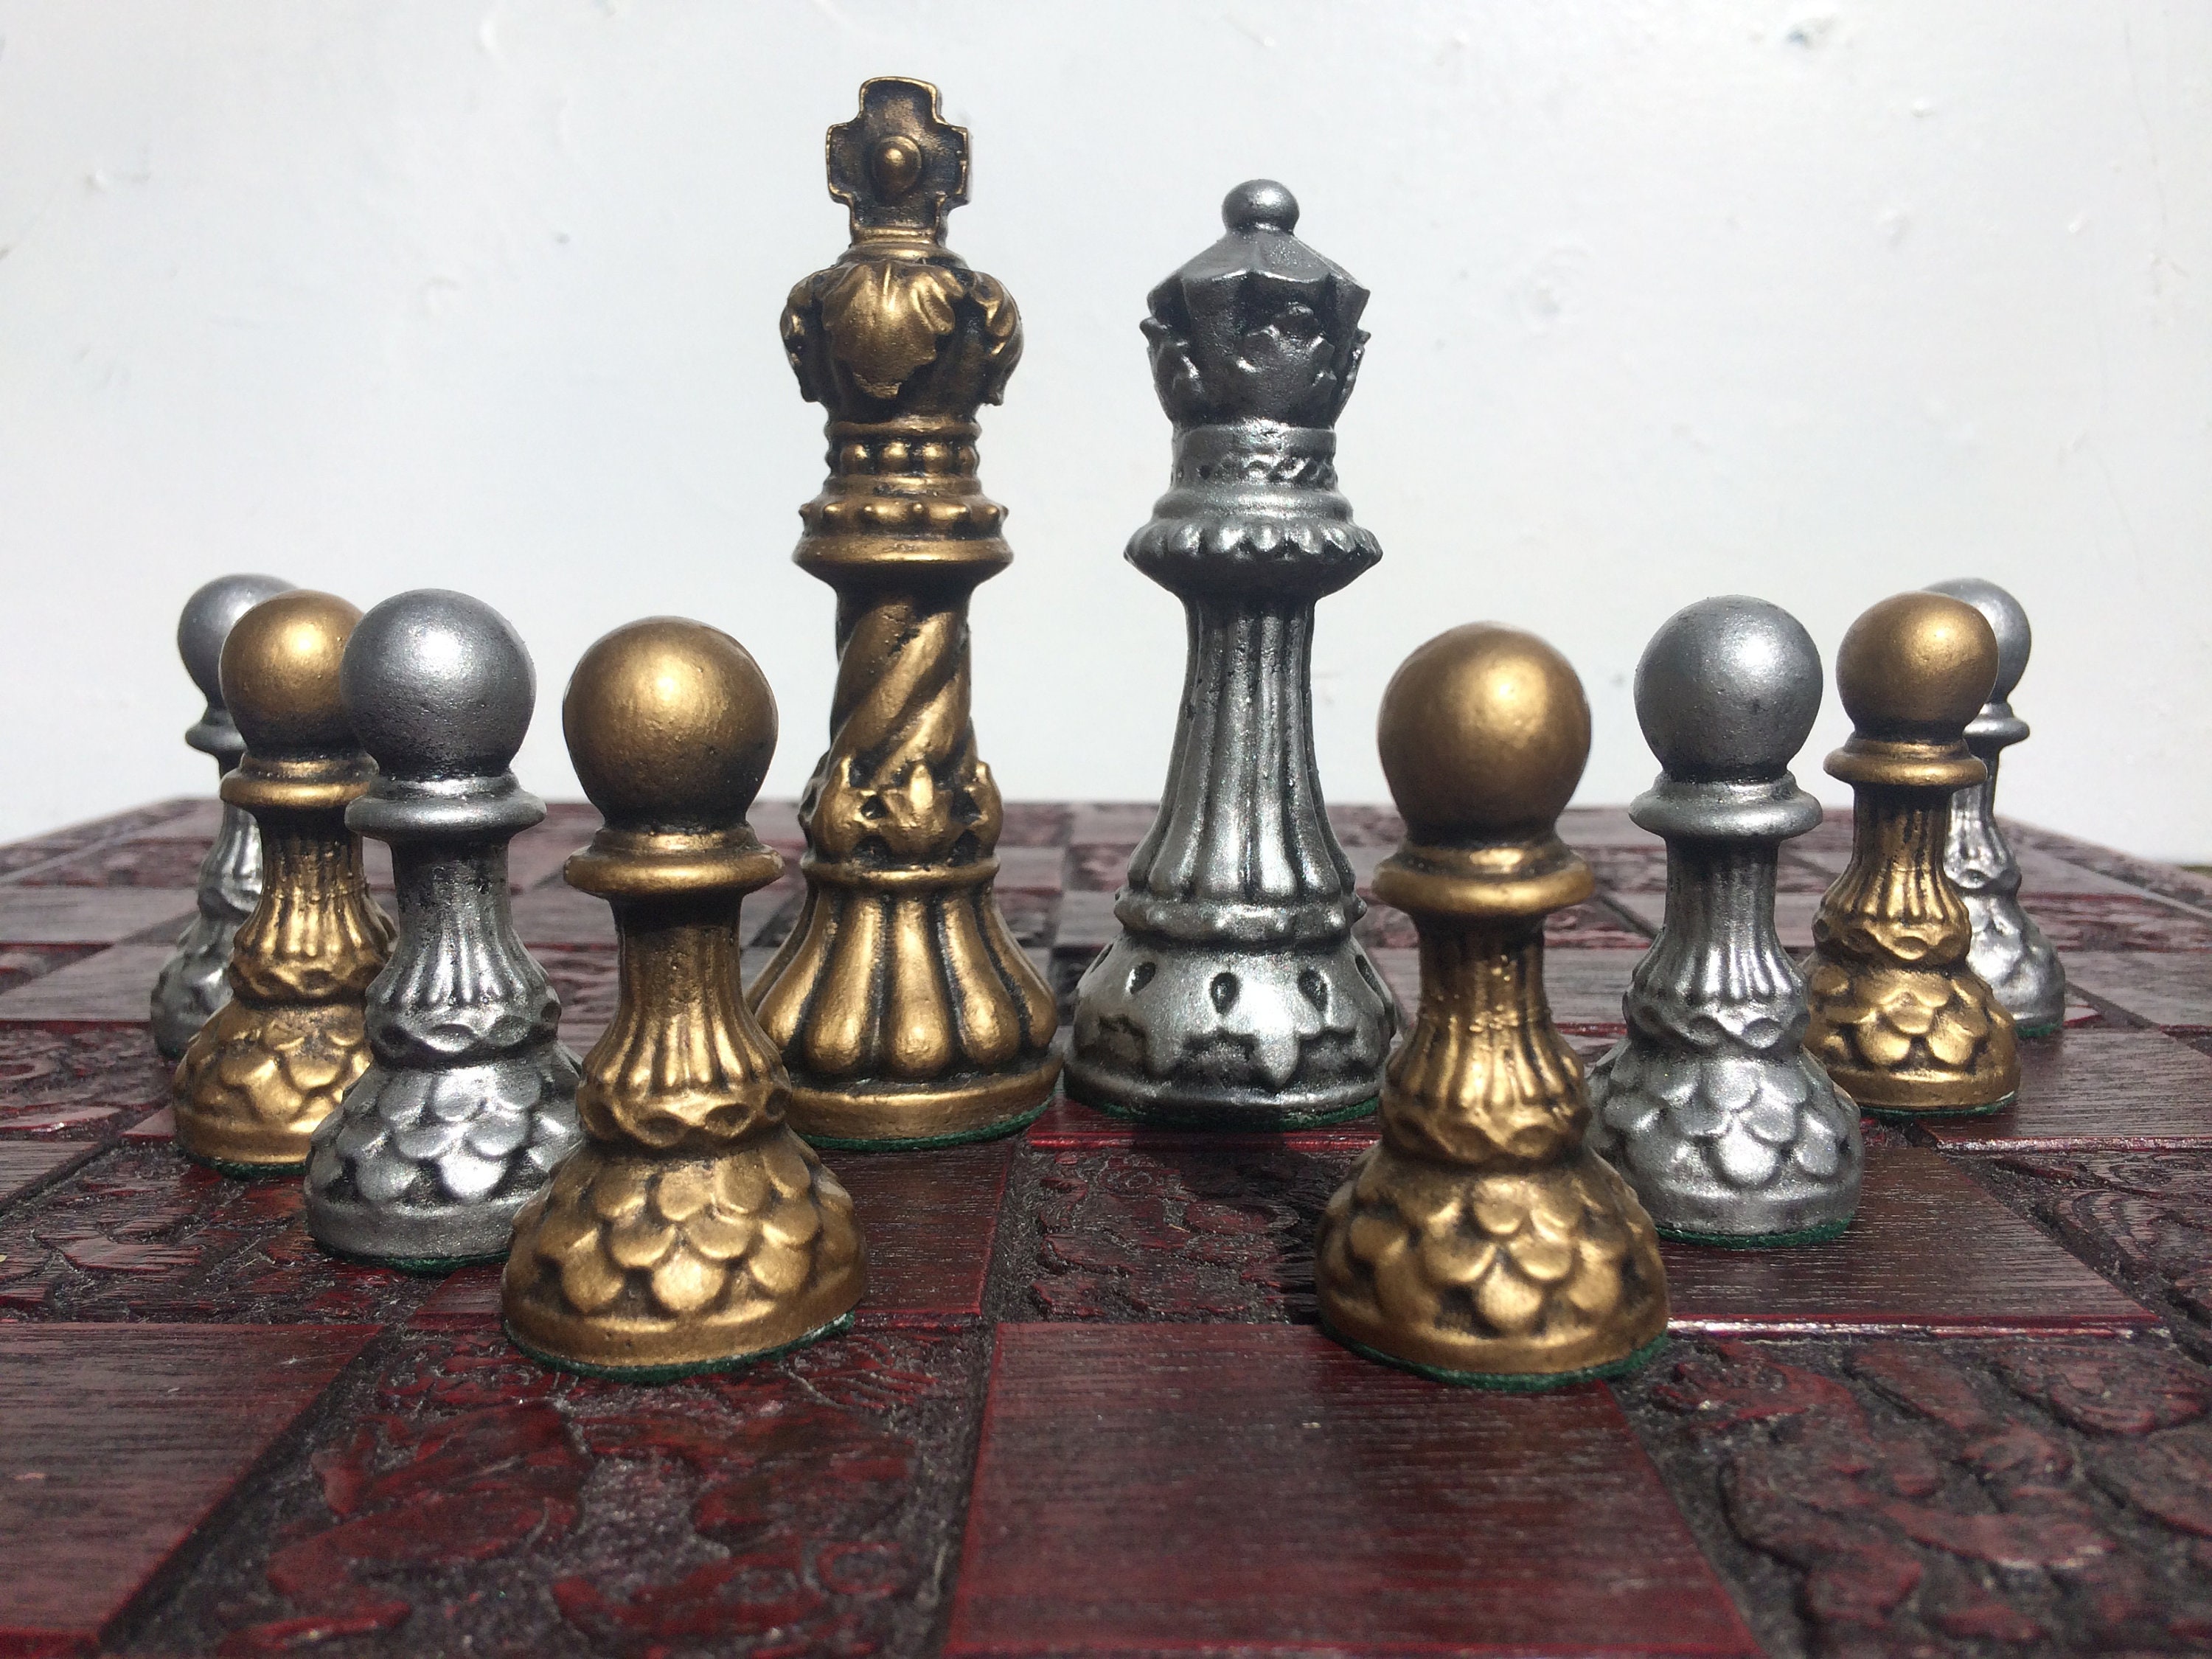 Staunton Chess Set Ornate Chess Pieces Metallic Antique Etsy Uk